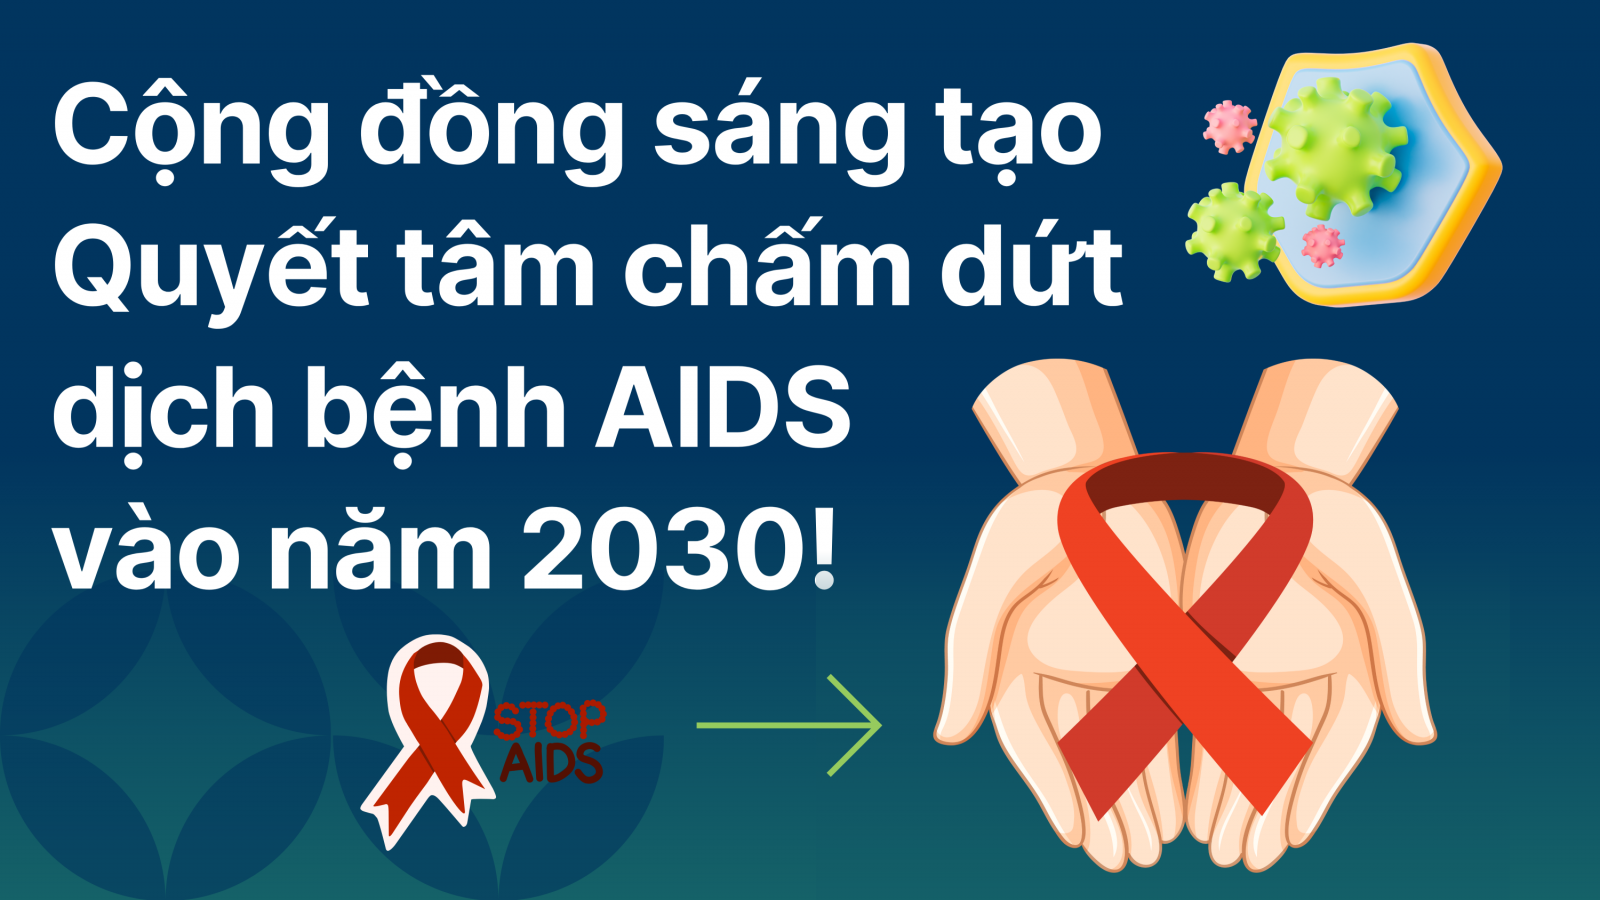 “Cộng đồng sáng tạo - Quyết tâm chấm dứt dịch bệnh AIDS  vào năm 2030!”